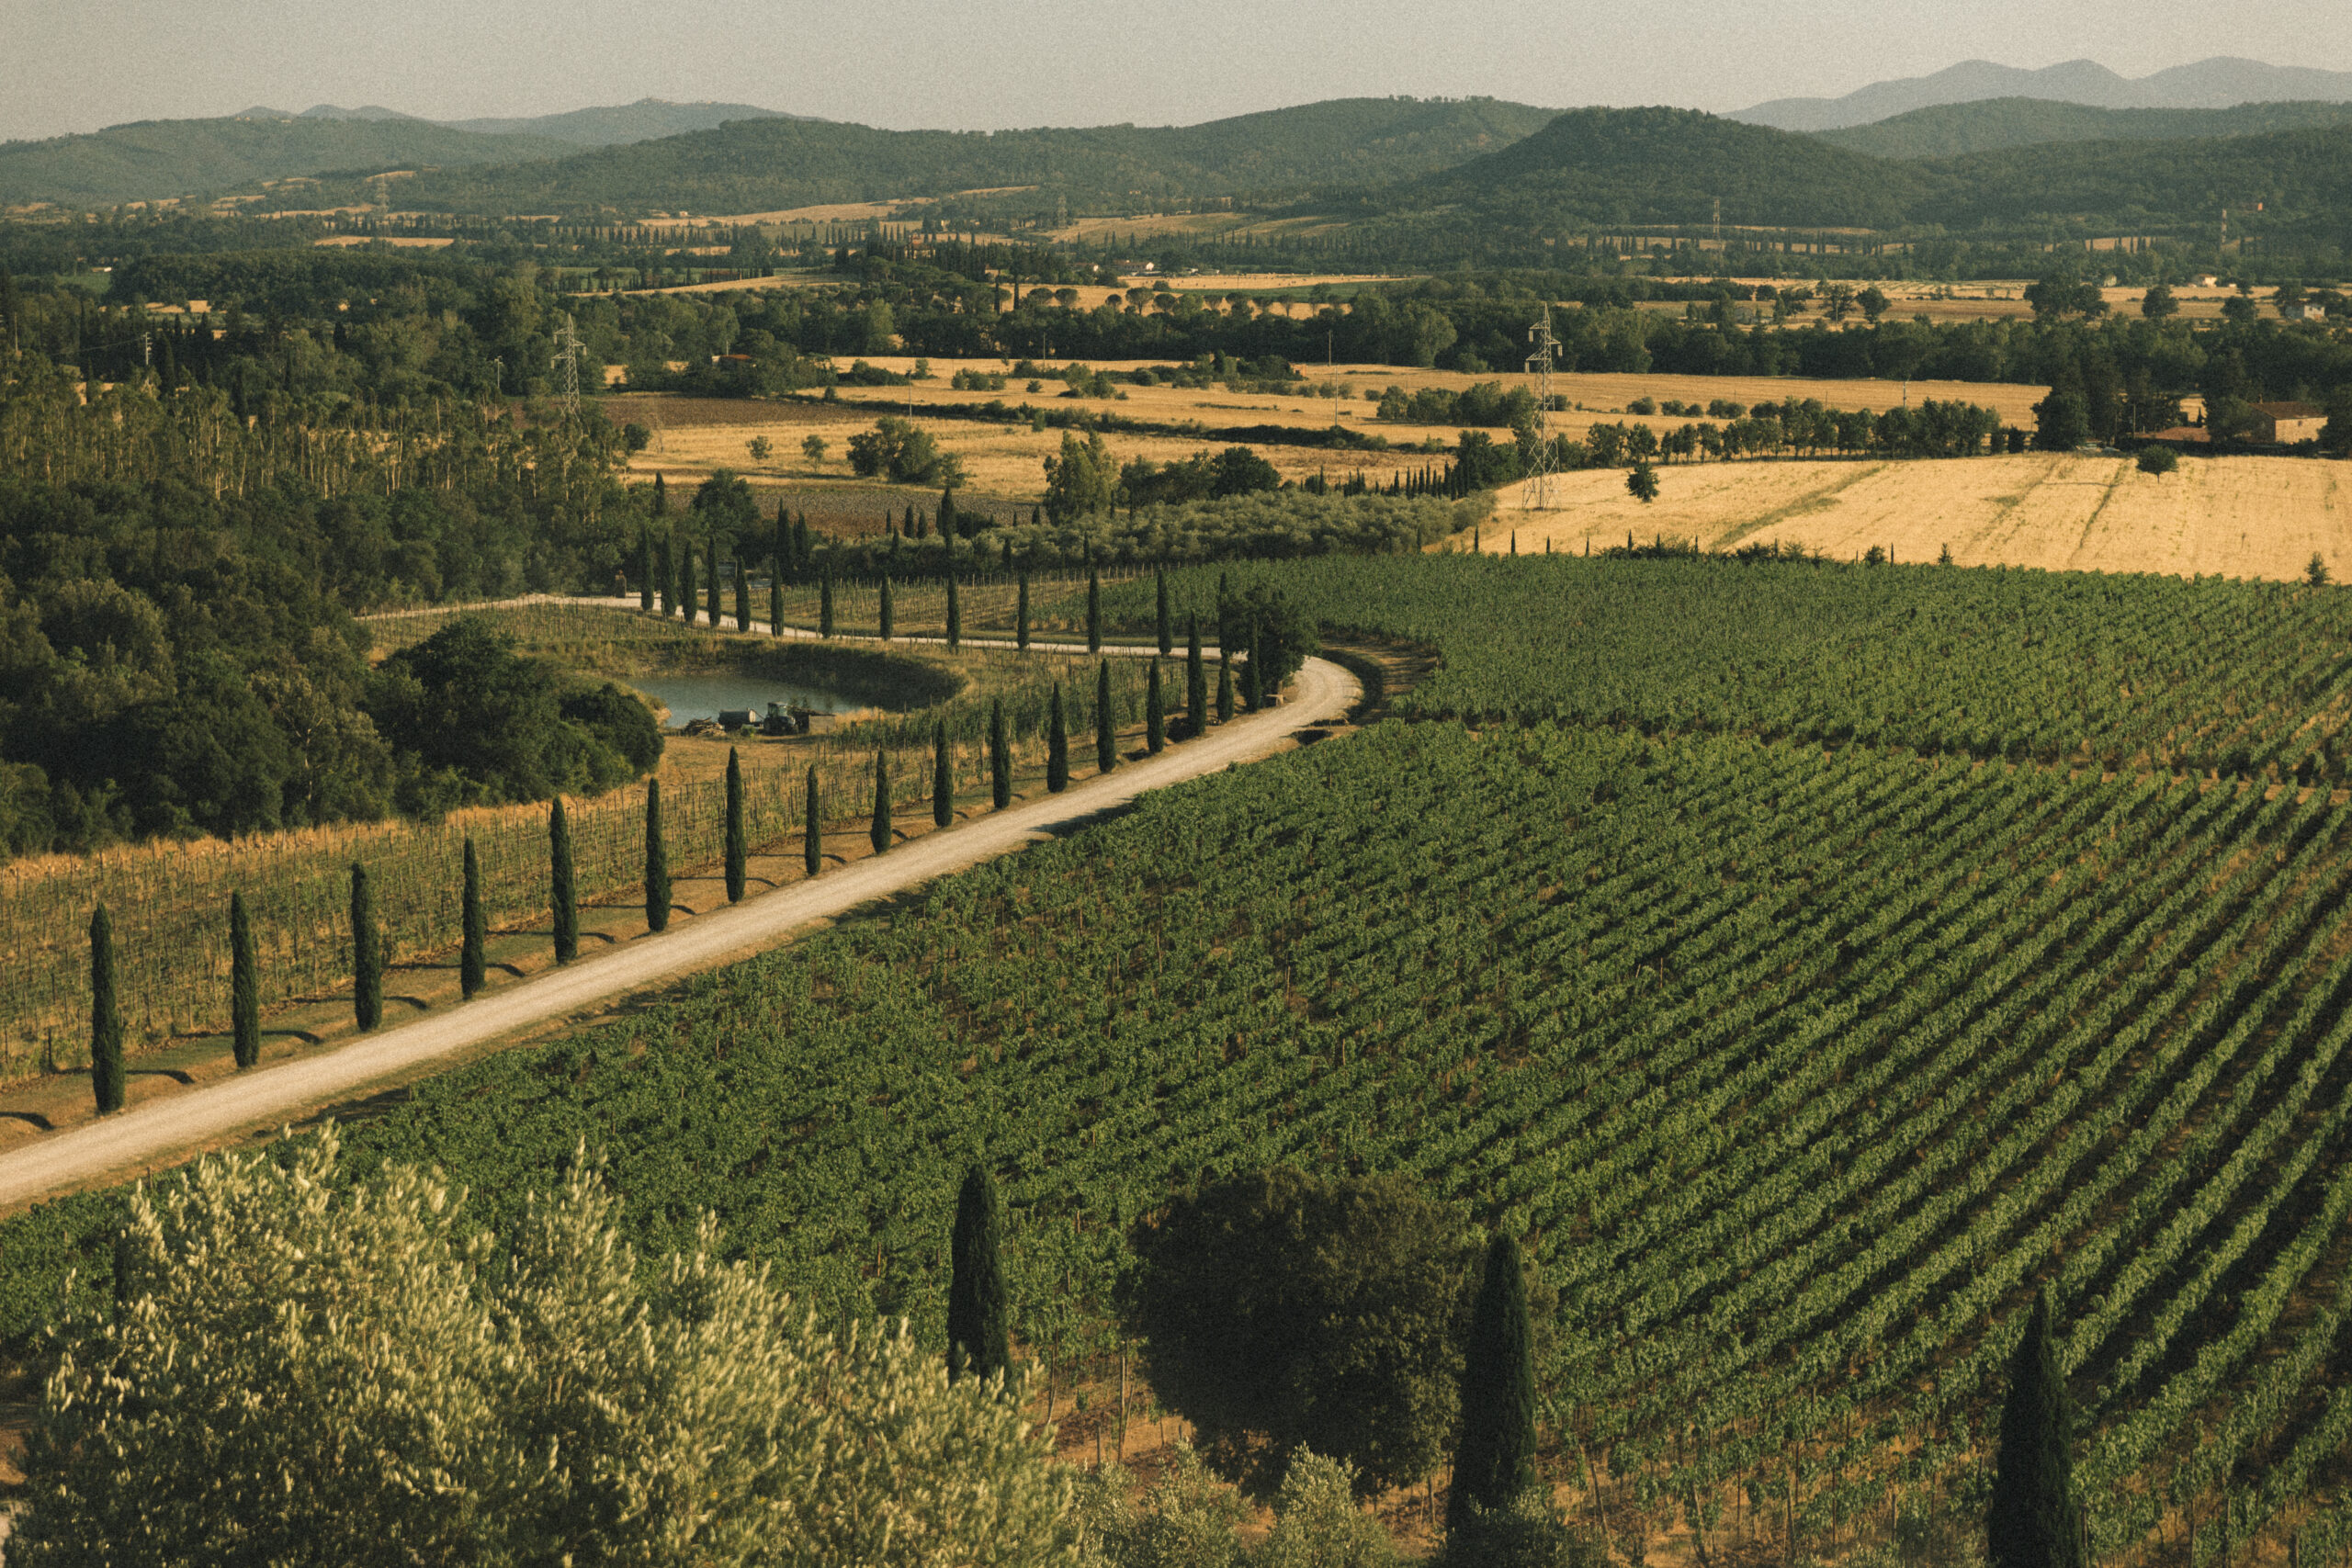 Italian vineyards in Tuscany